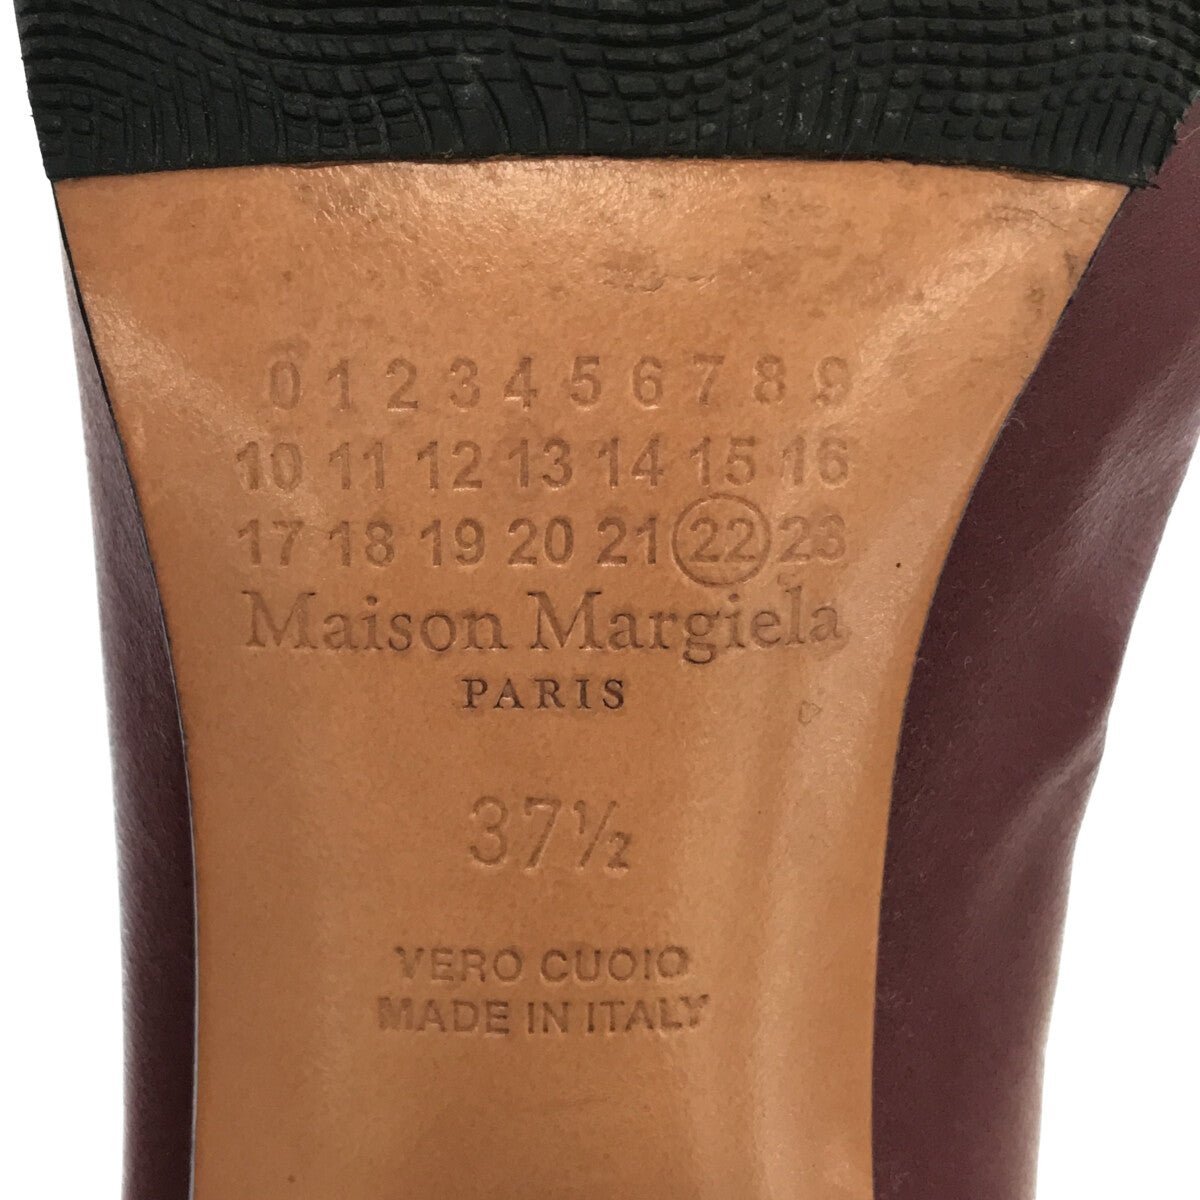 Maison Margiela / メゾンマルジェラ | 2017AW | Tabi 足袋ブーツ ブーティ 箱付き | 37 1/2 |